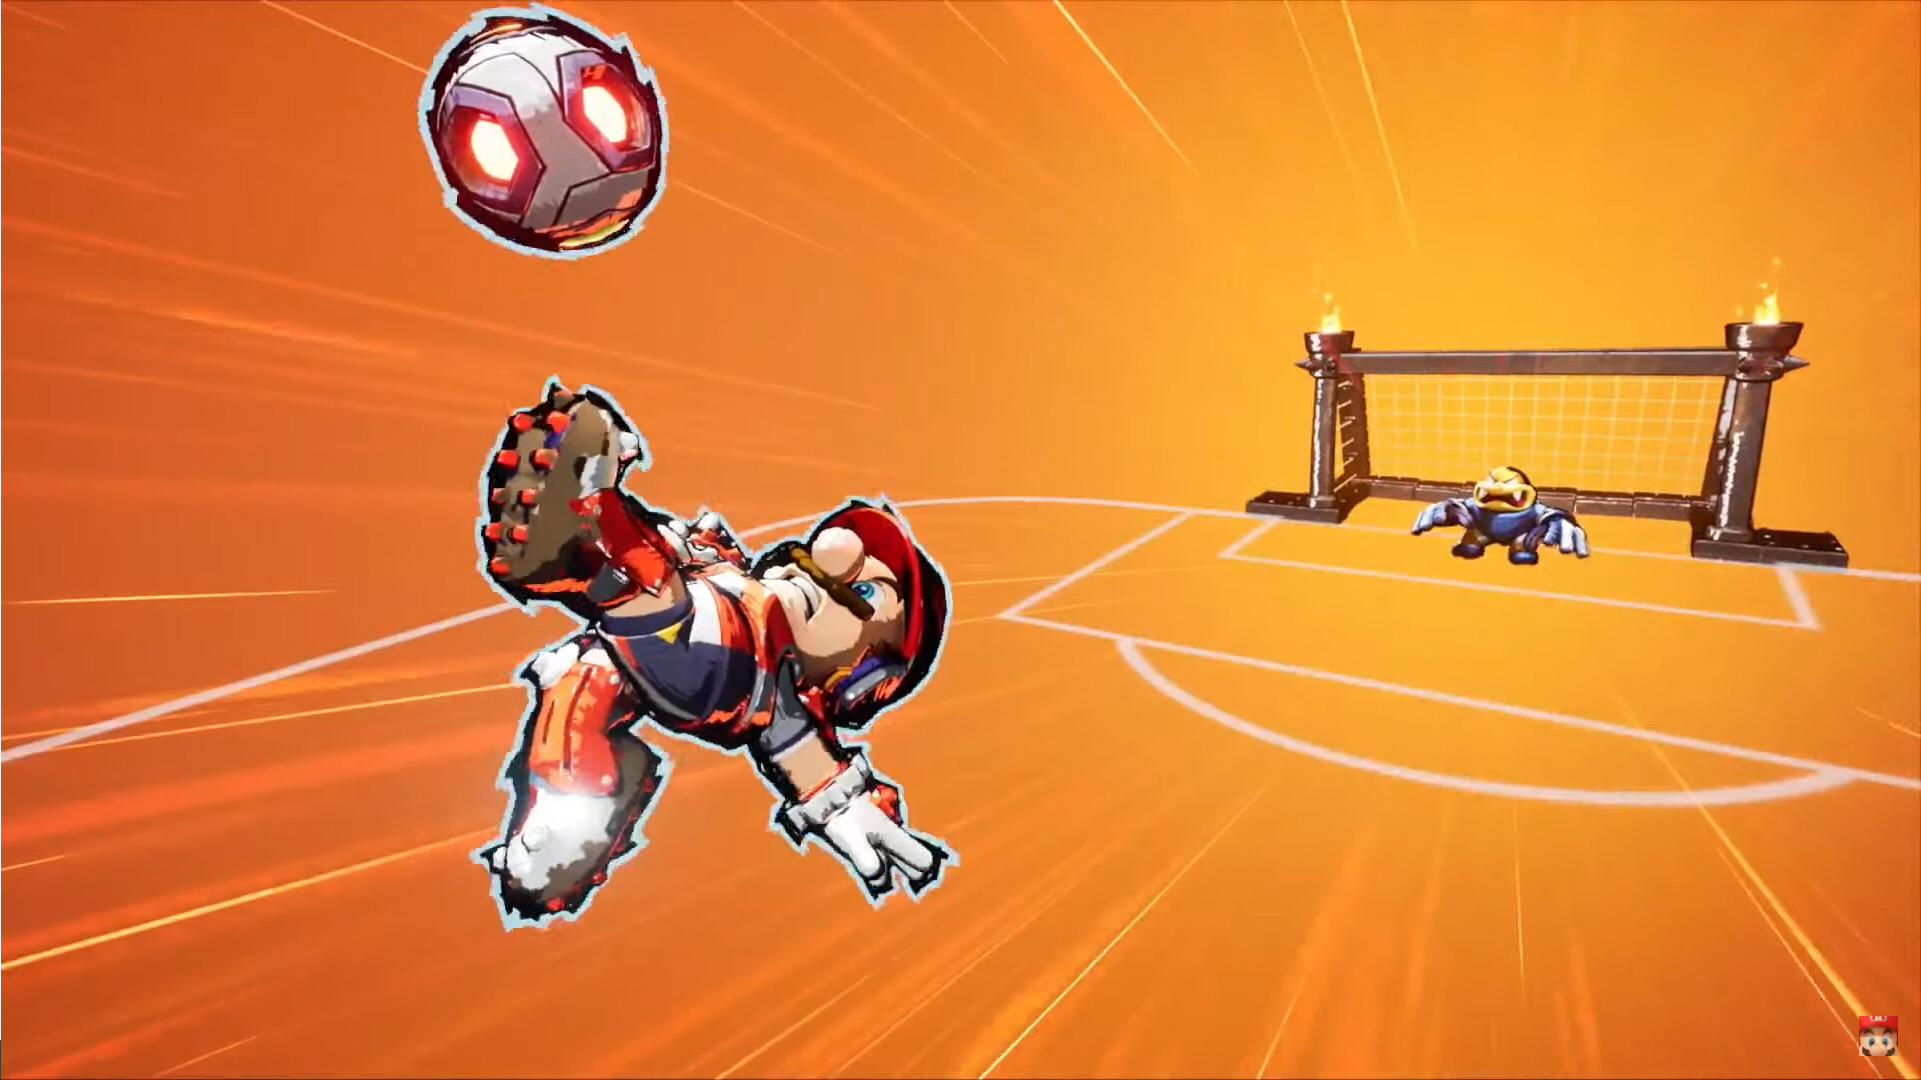 Mario kicks a ball into the goal with a backflip.